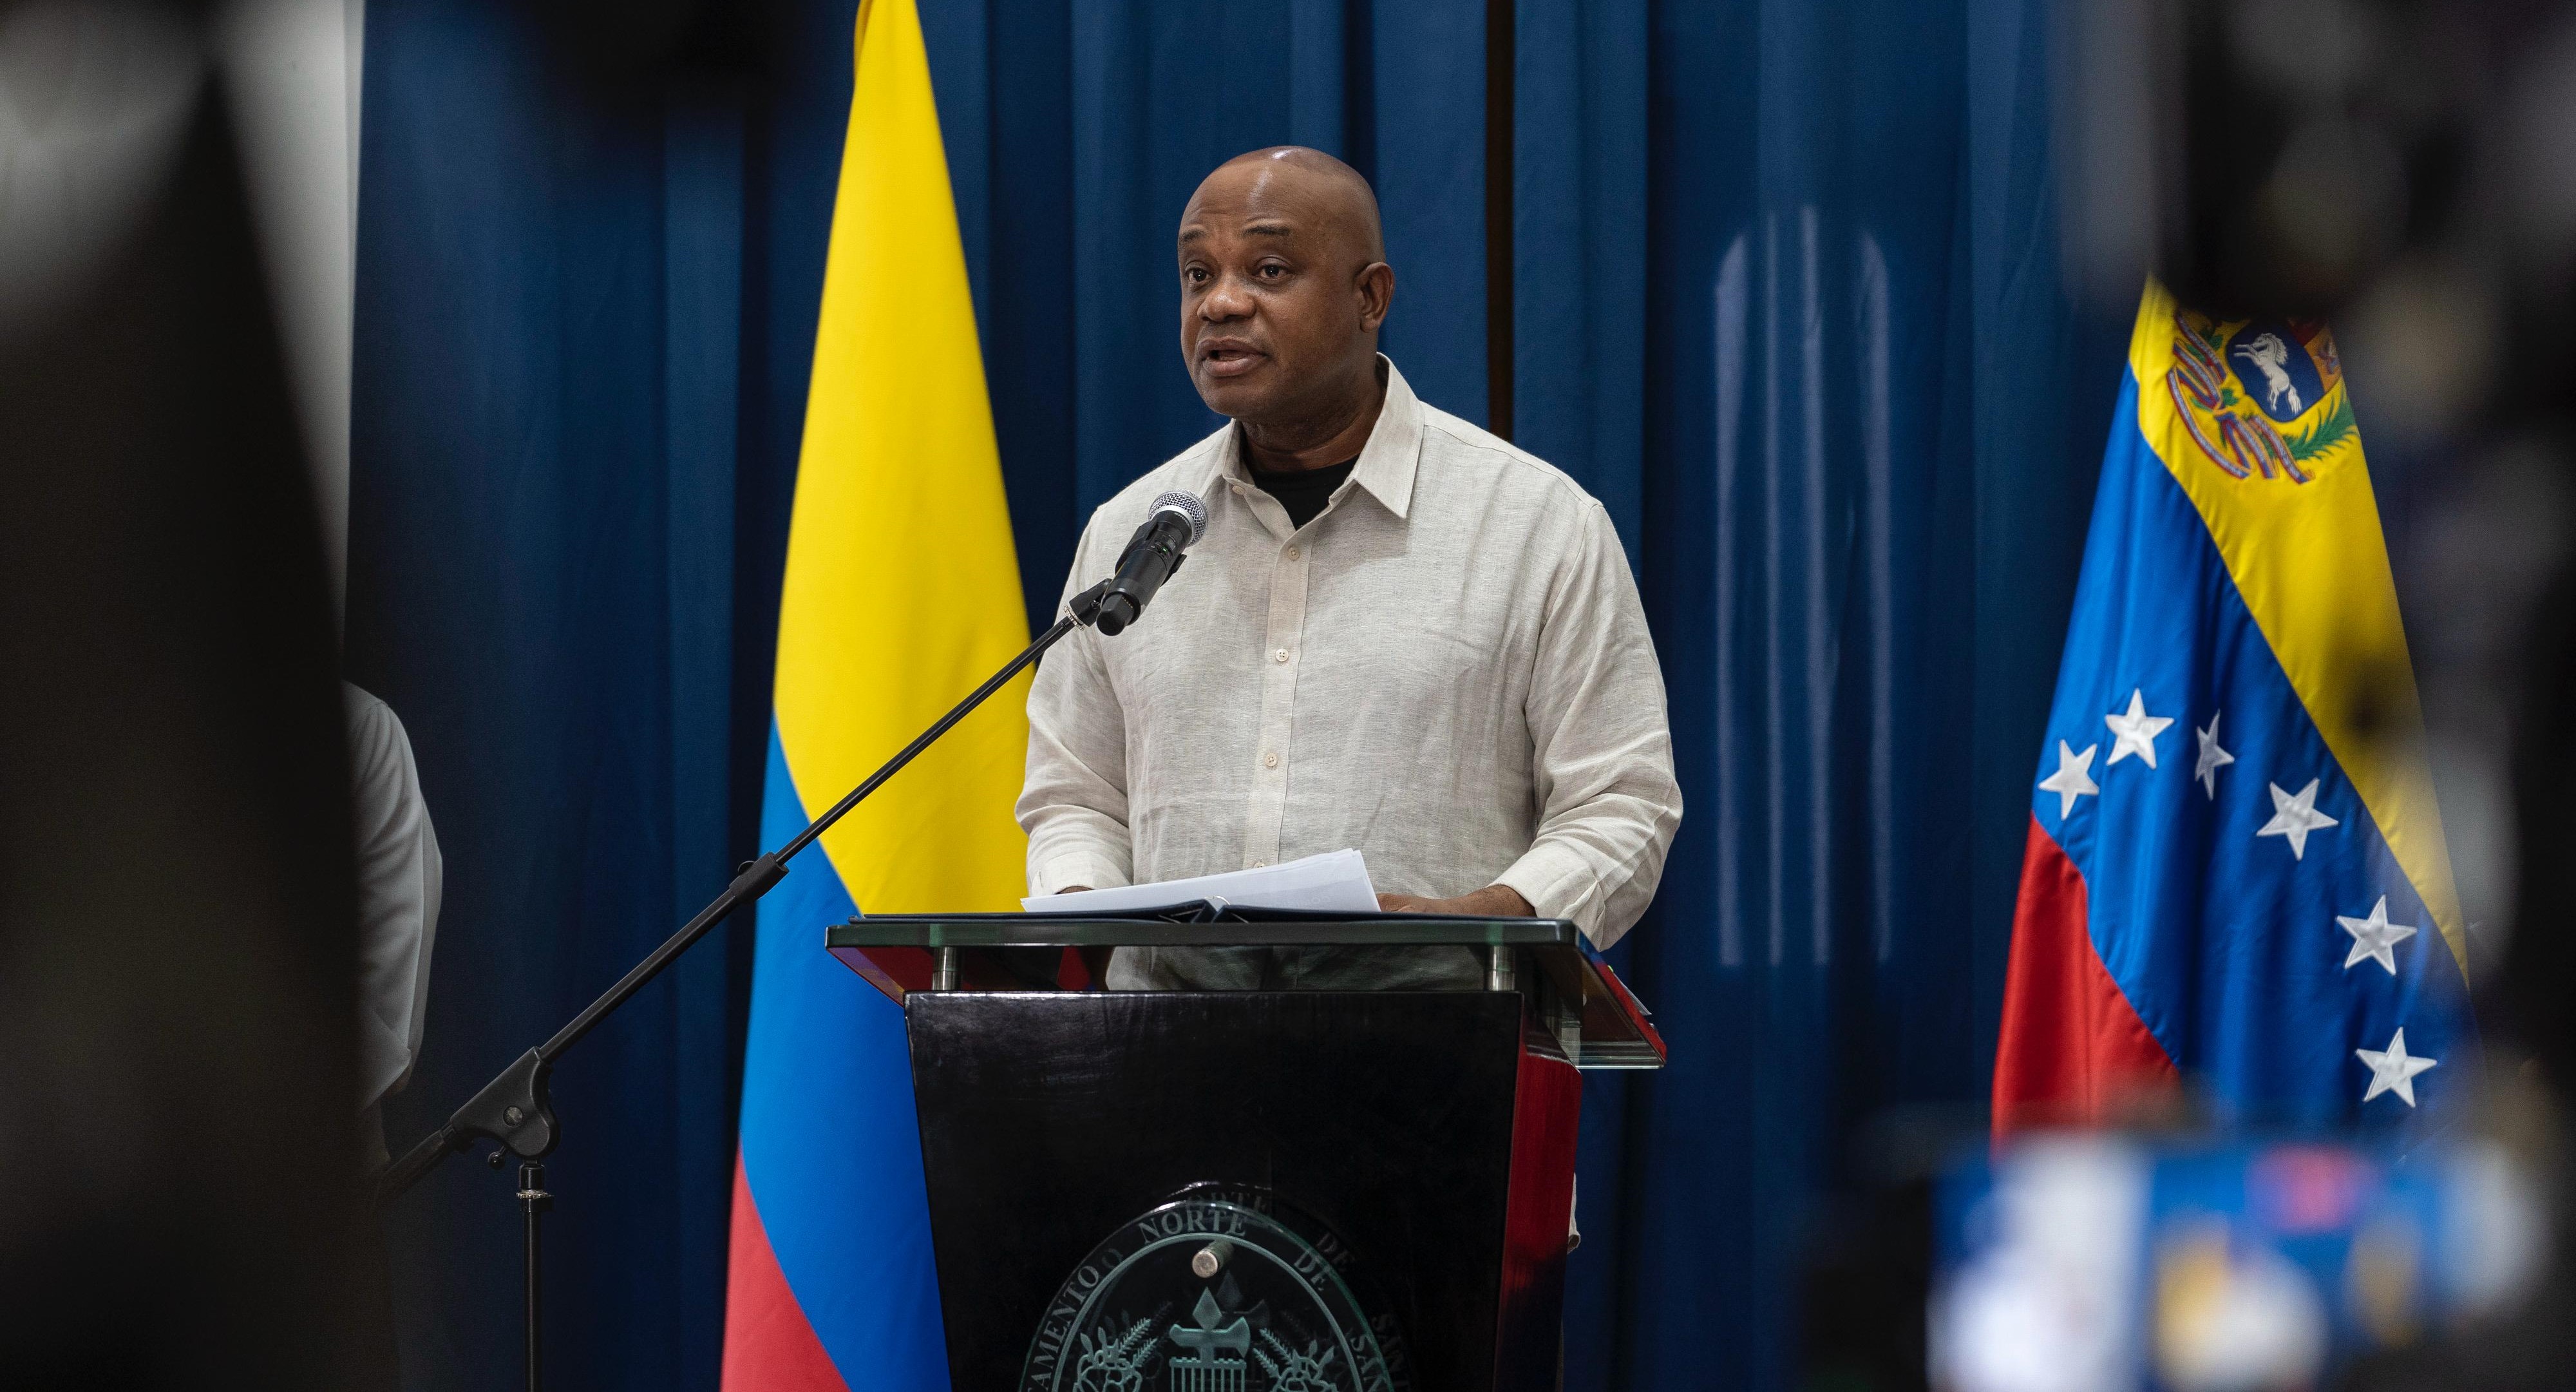 Temas estratégicos de la agenda bilateral y asuntos de impacto regional fueron abordados por los cancilleres de Colombia y Venezuela